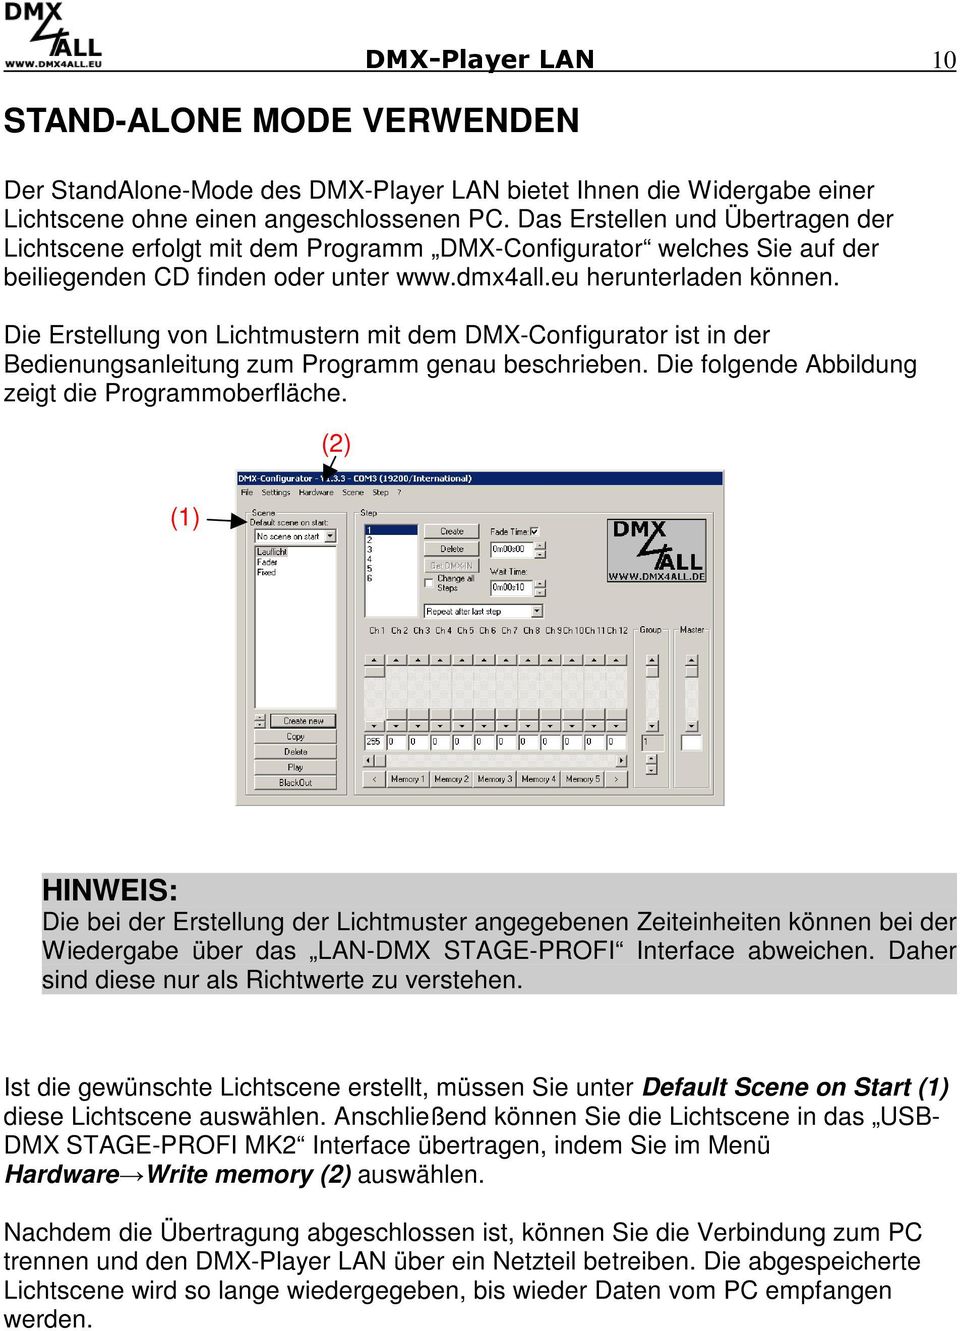 Die Erstellung von Lichtmustern mit dem DMX-Configurator ist in der Bedienungsanleitung zum Programm genau beschrieben. Die folgende Abbildung zeigt die Programmoberfläche.